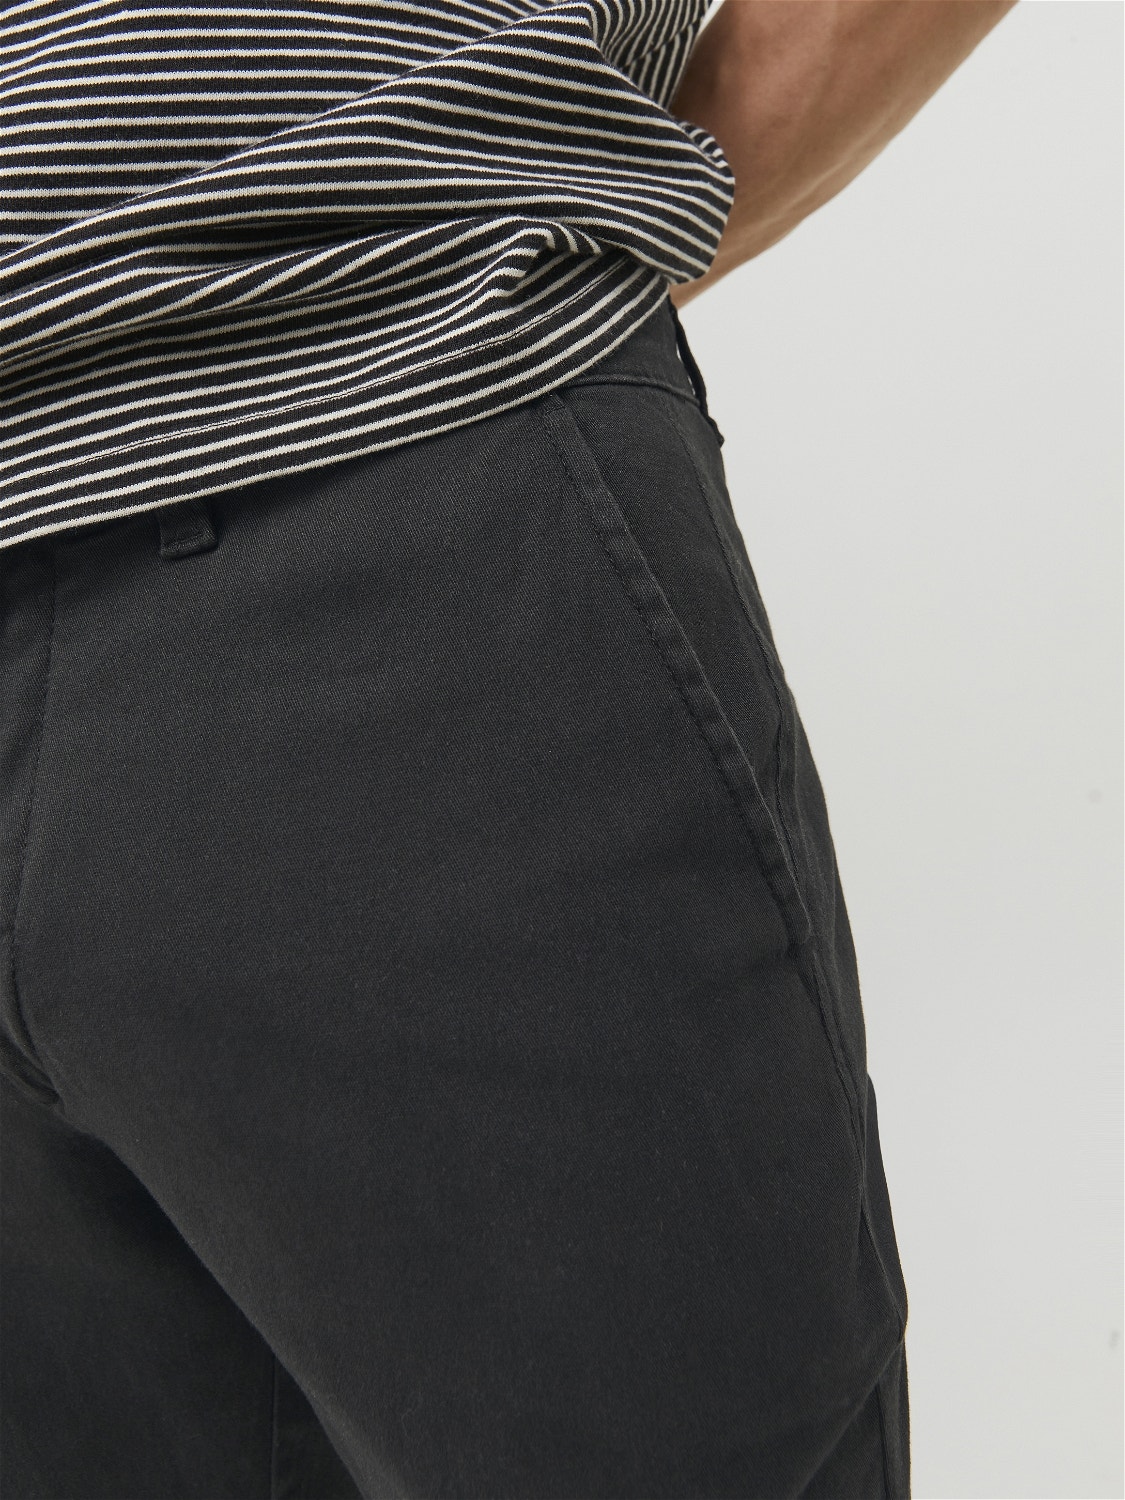 Jack & Jones 2-balení Slim Fit Plátěné kalhoty Chino -Black - 12180705